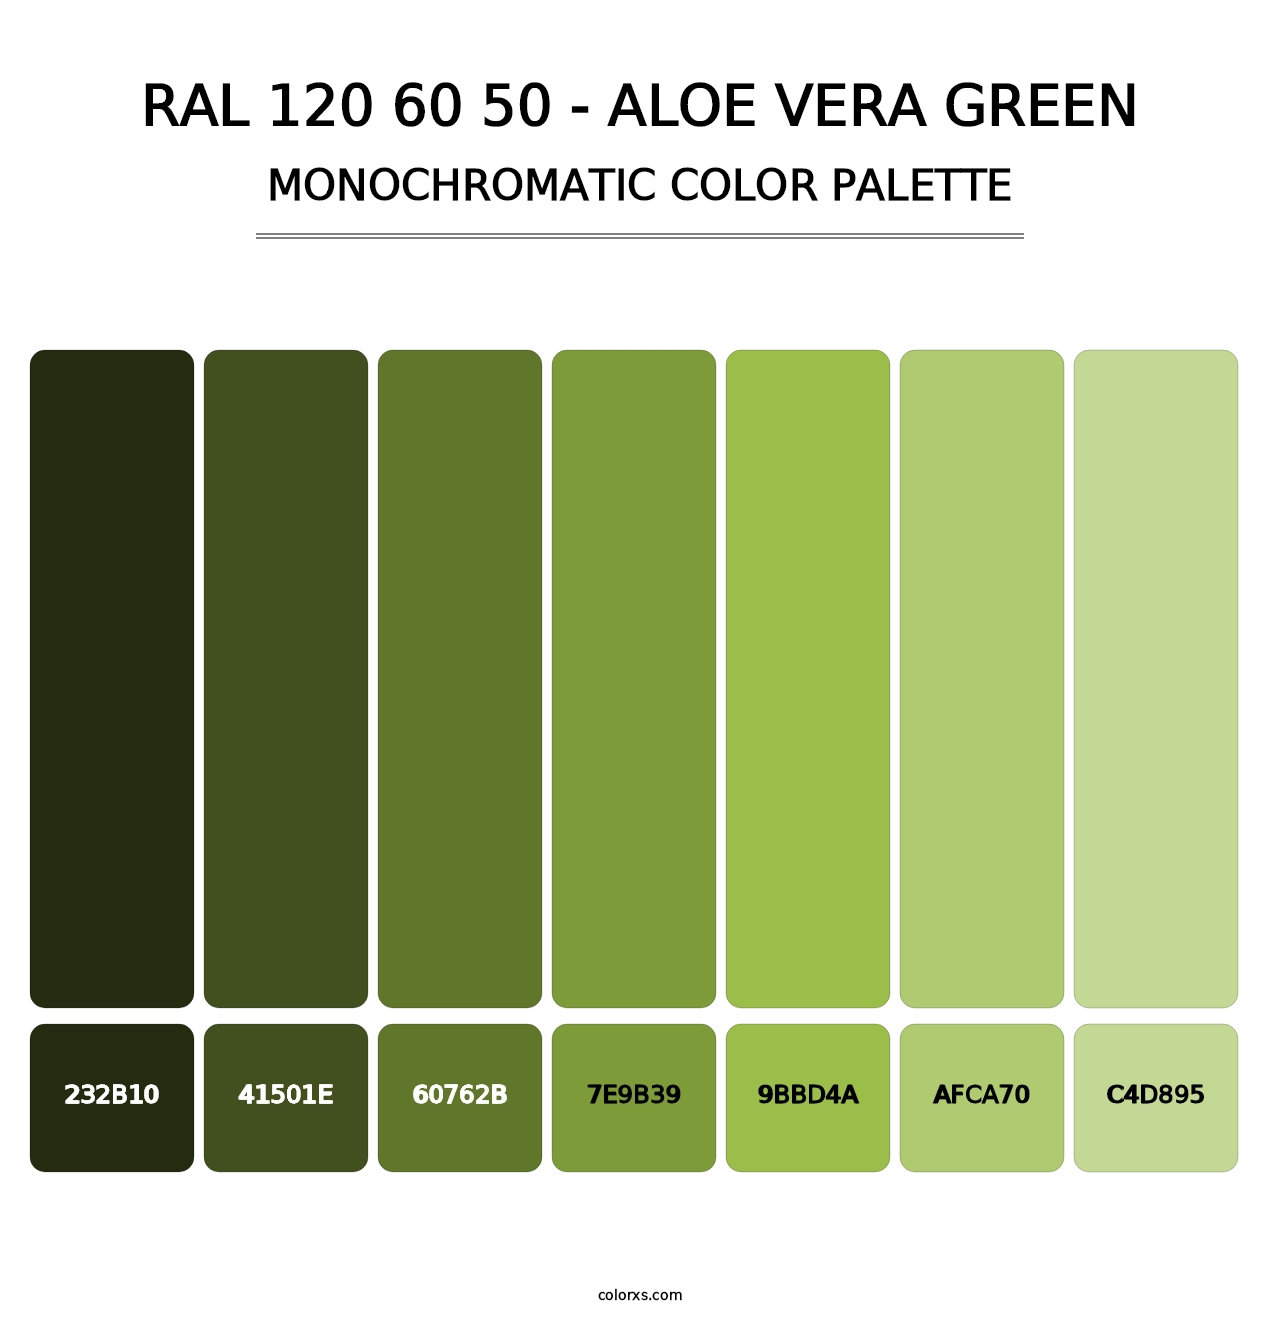 RAL 120 60 50 - Aloe Vera Green - Monochromatic Color Palette